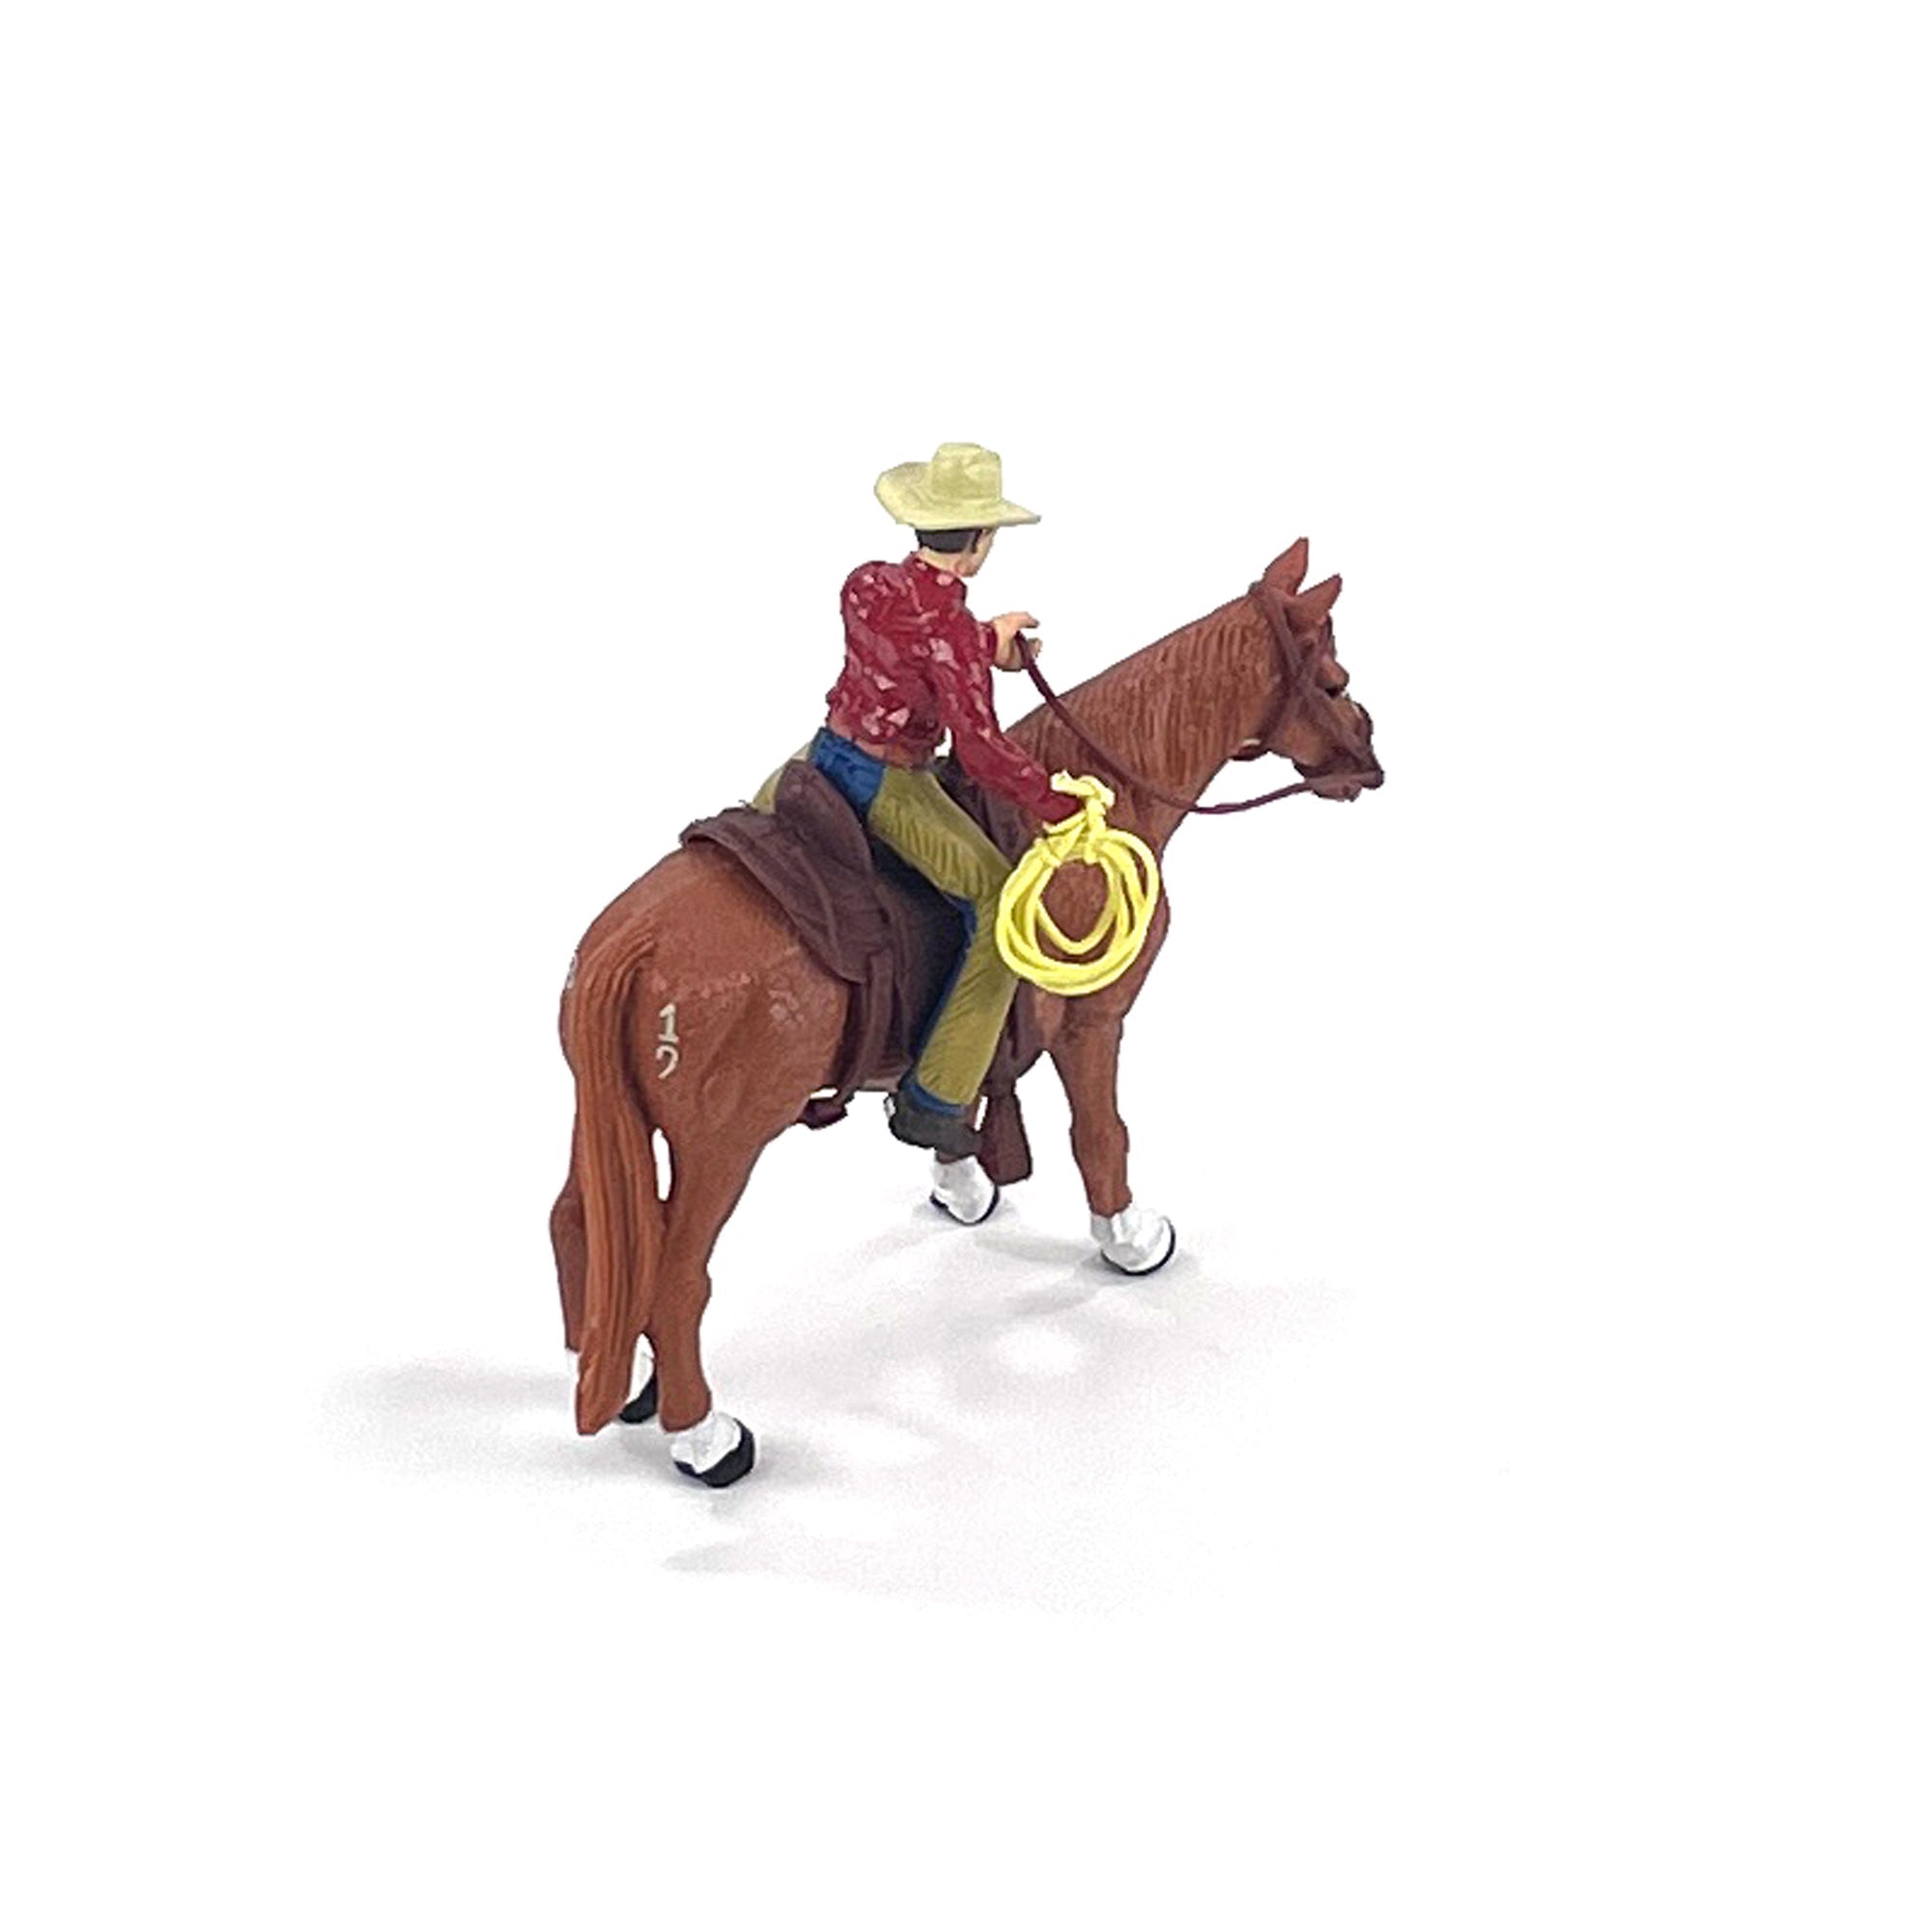 Four Sixes Ranch Cowboy & Quarter Horse | bigcountrytoys.com